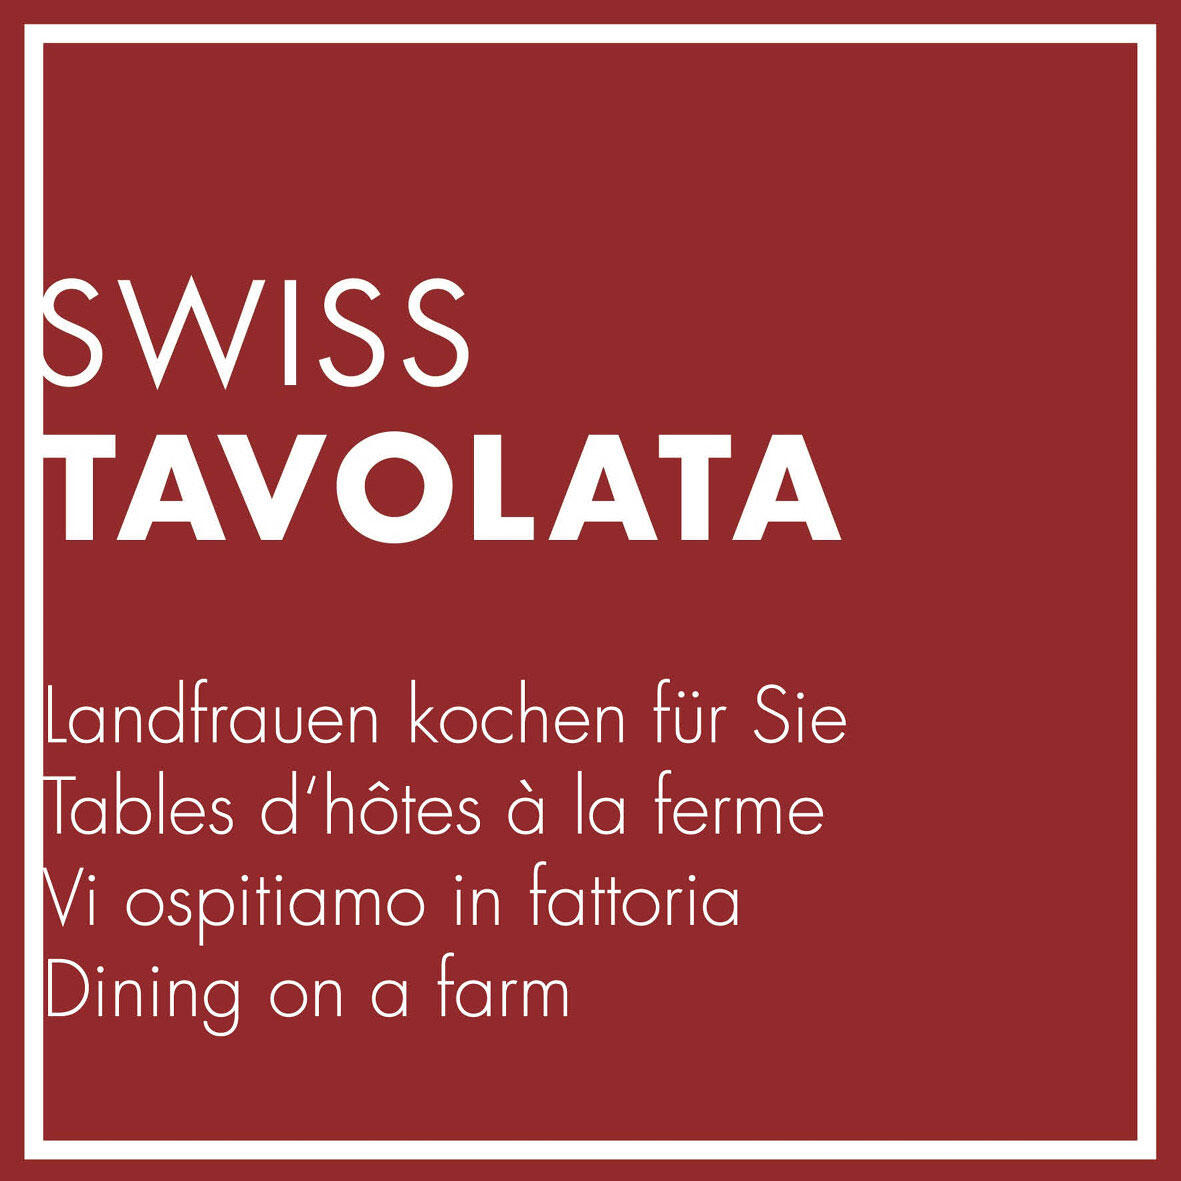 SWISS TAVOLATA - Landfrauen kochen für Sie